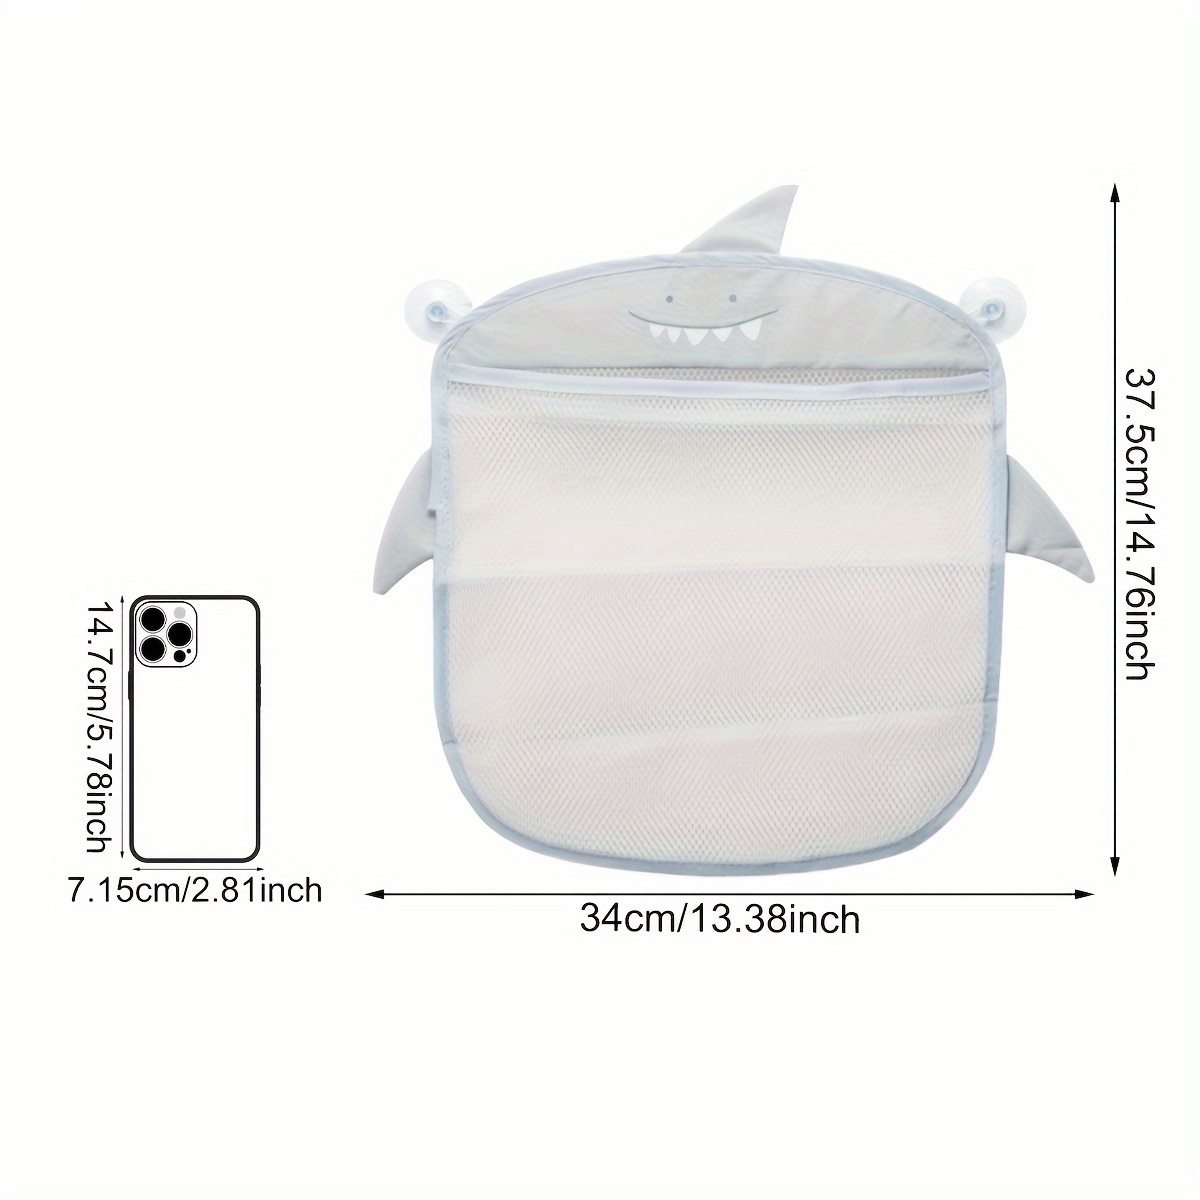 Baby Products Online - New Baby Bathroom Mesh Bag Sucker Design